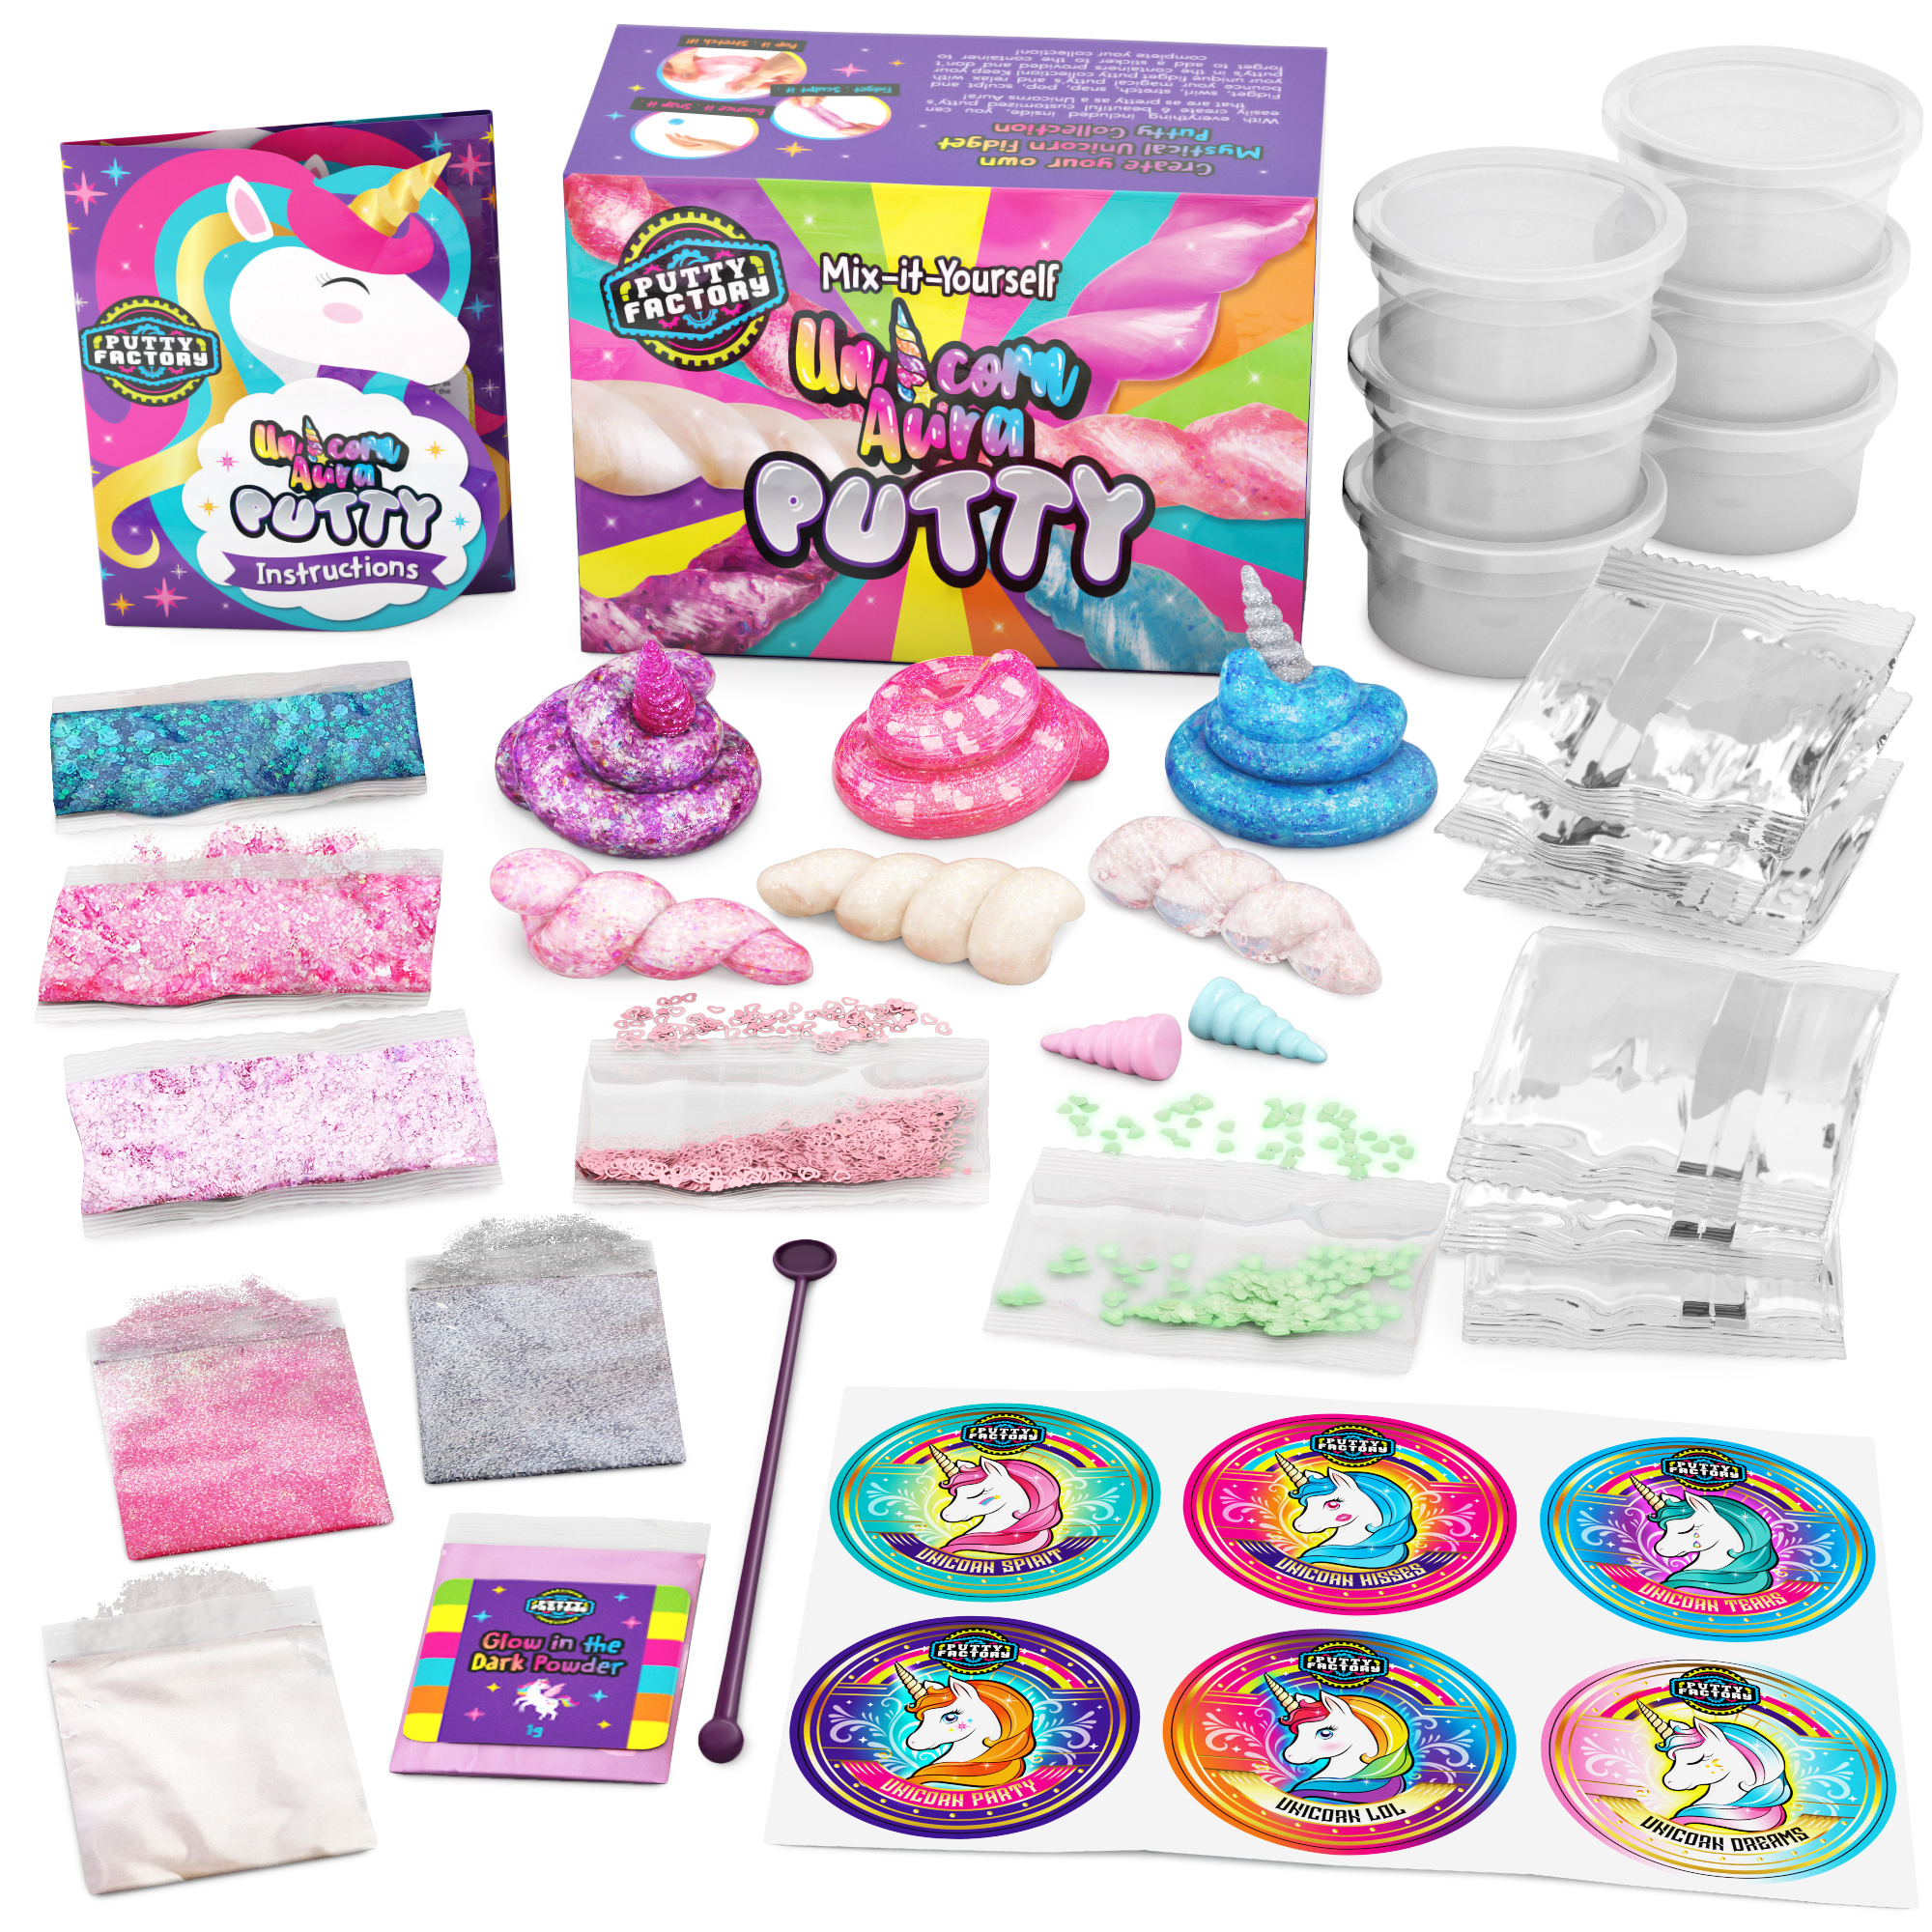 Unicorns Gifts for Girls - Unicorn Stationary Set, Unicorn Toys